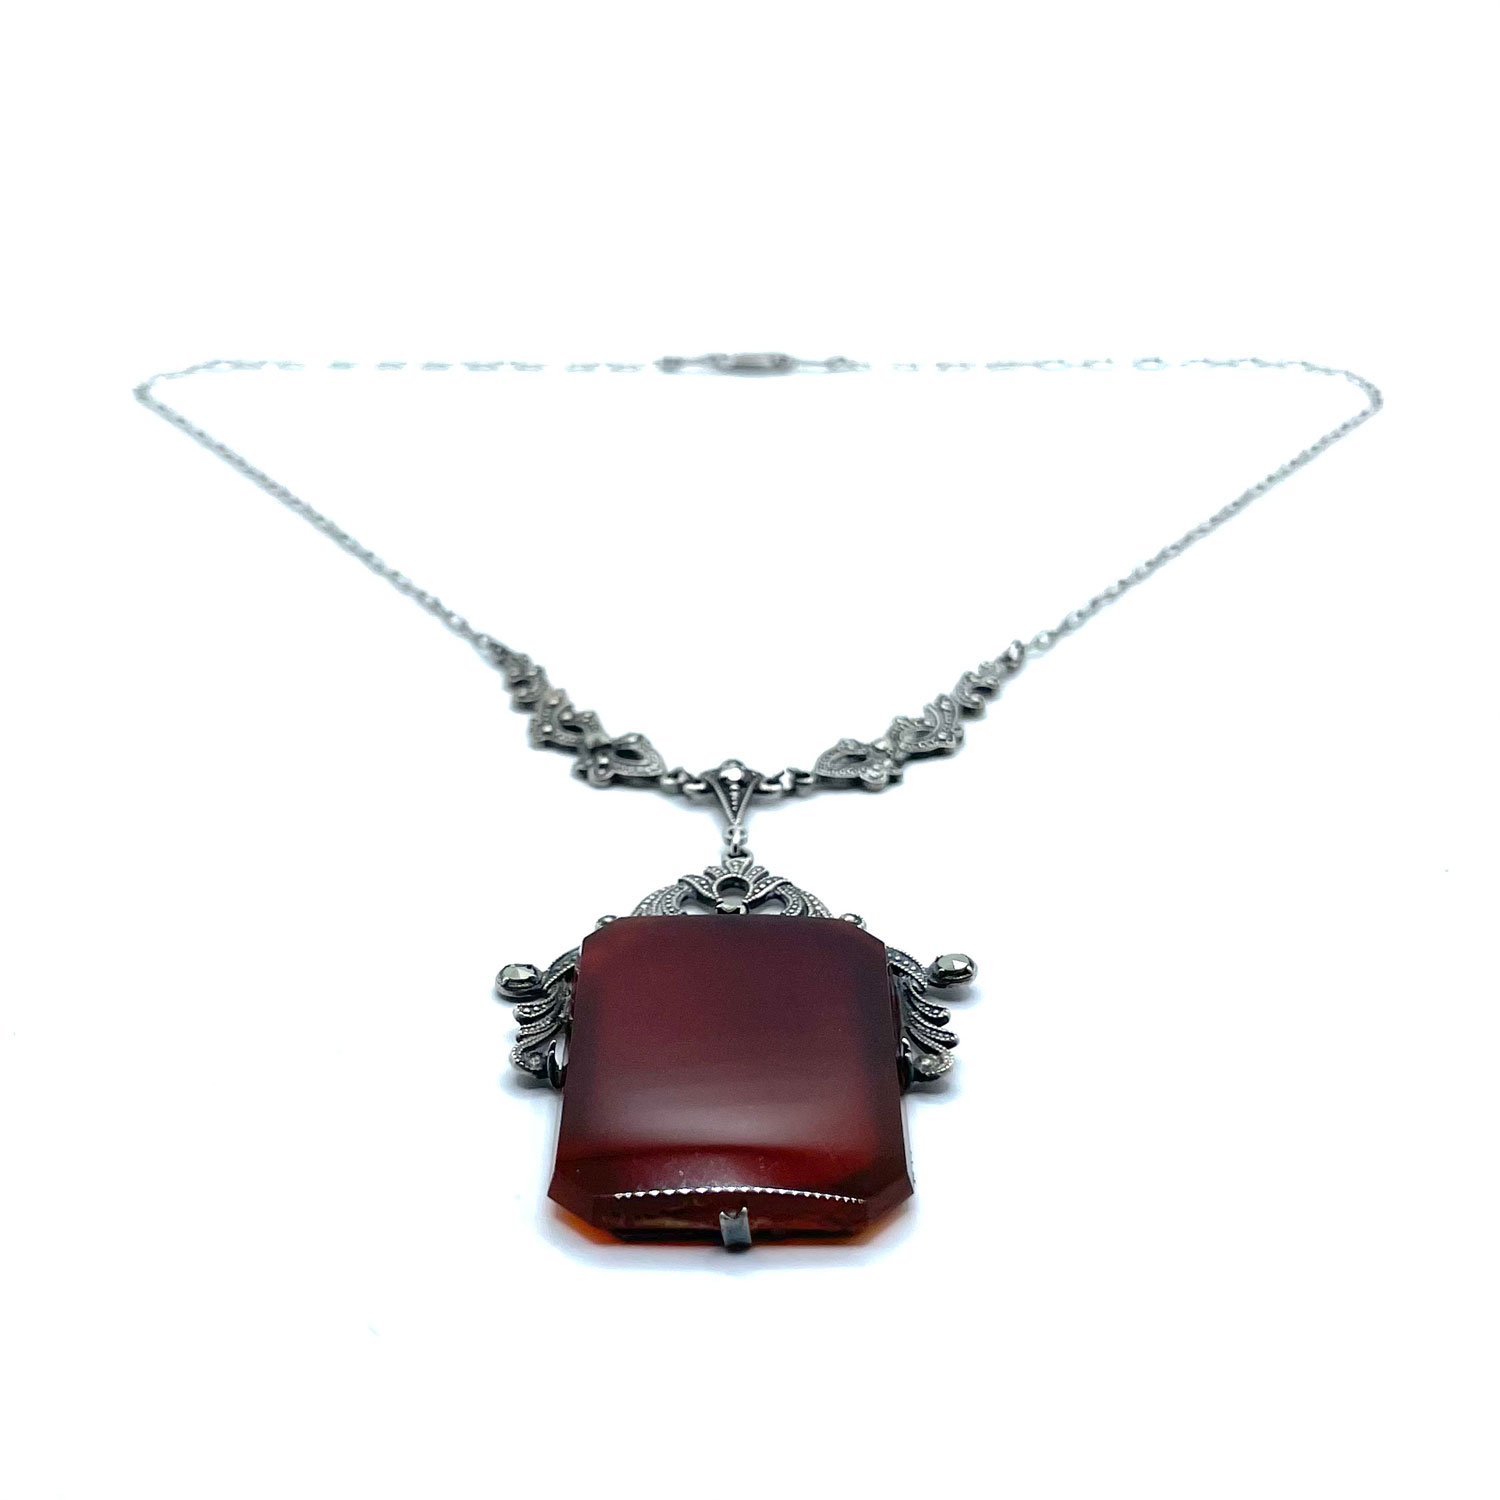 1920s Art Deco carnelian necklace